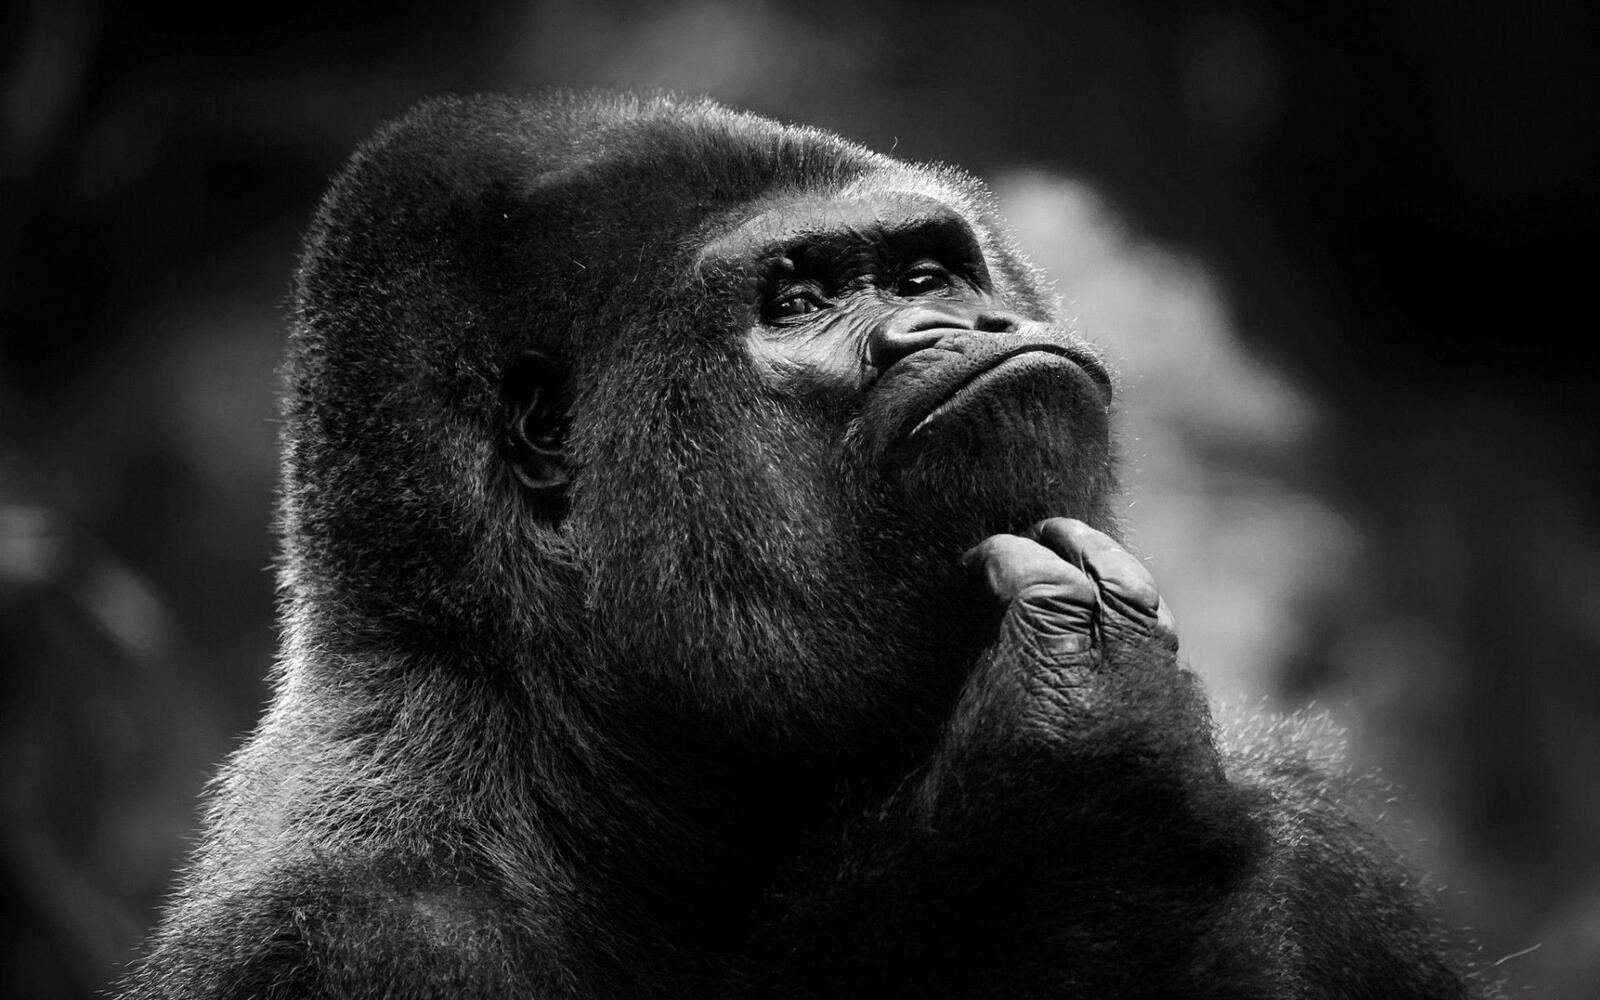 Бесплатное фото Шимпанзе на монохромной картинке